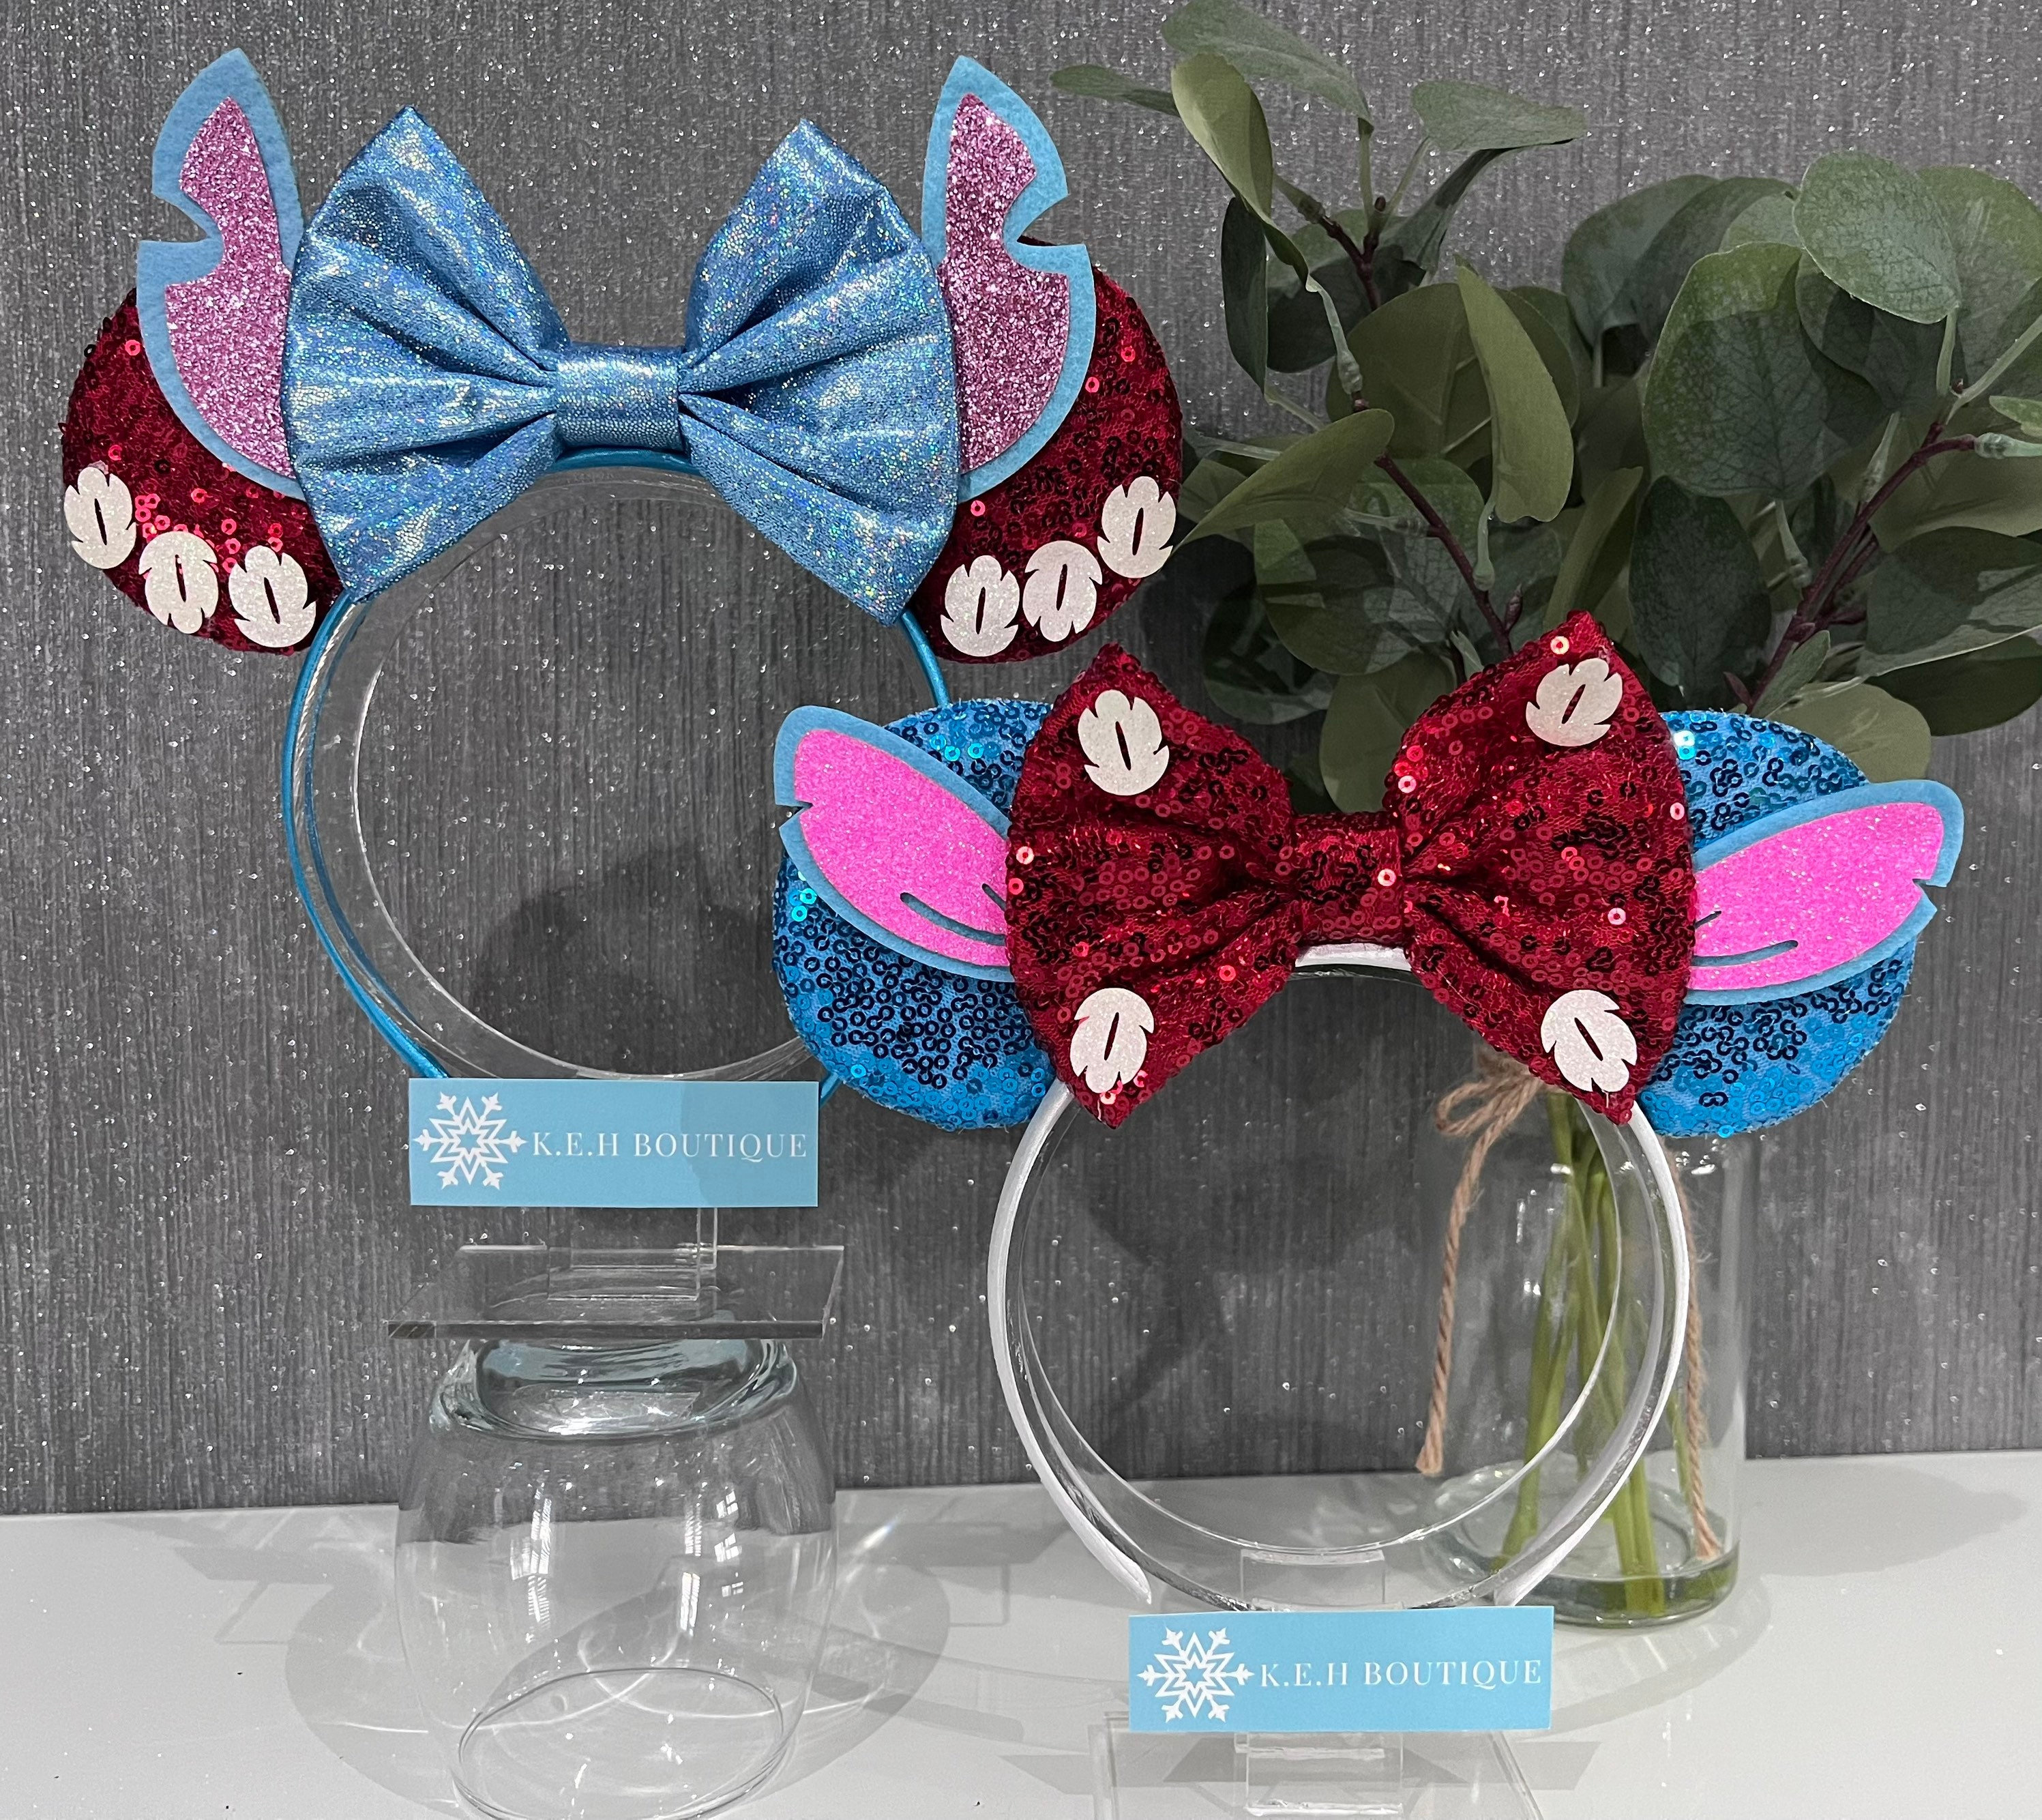 Serre-Tête Stitch Disney Flower sur Rapid Cadeau